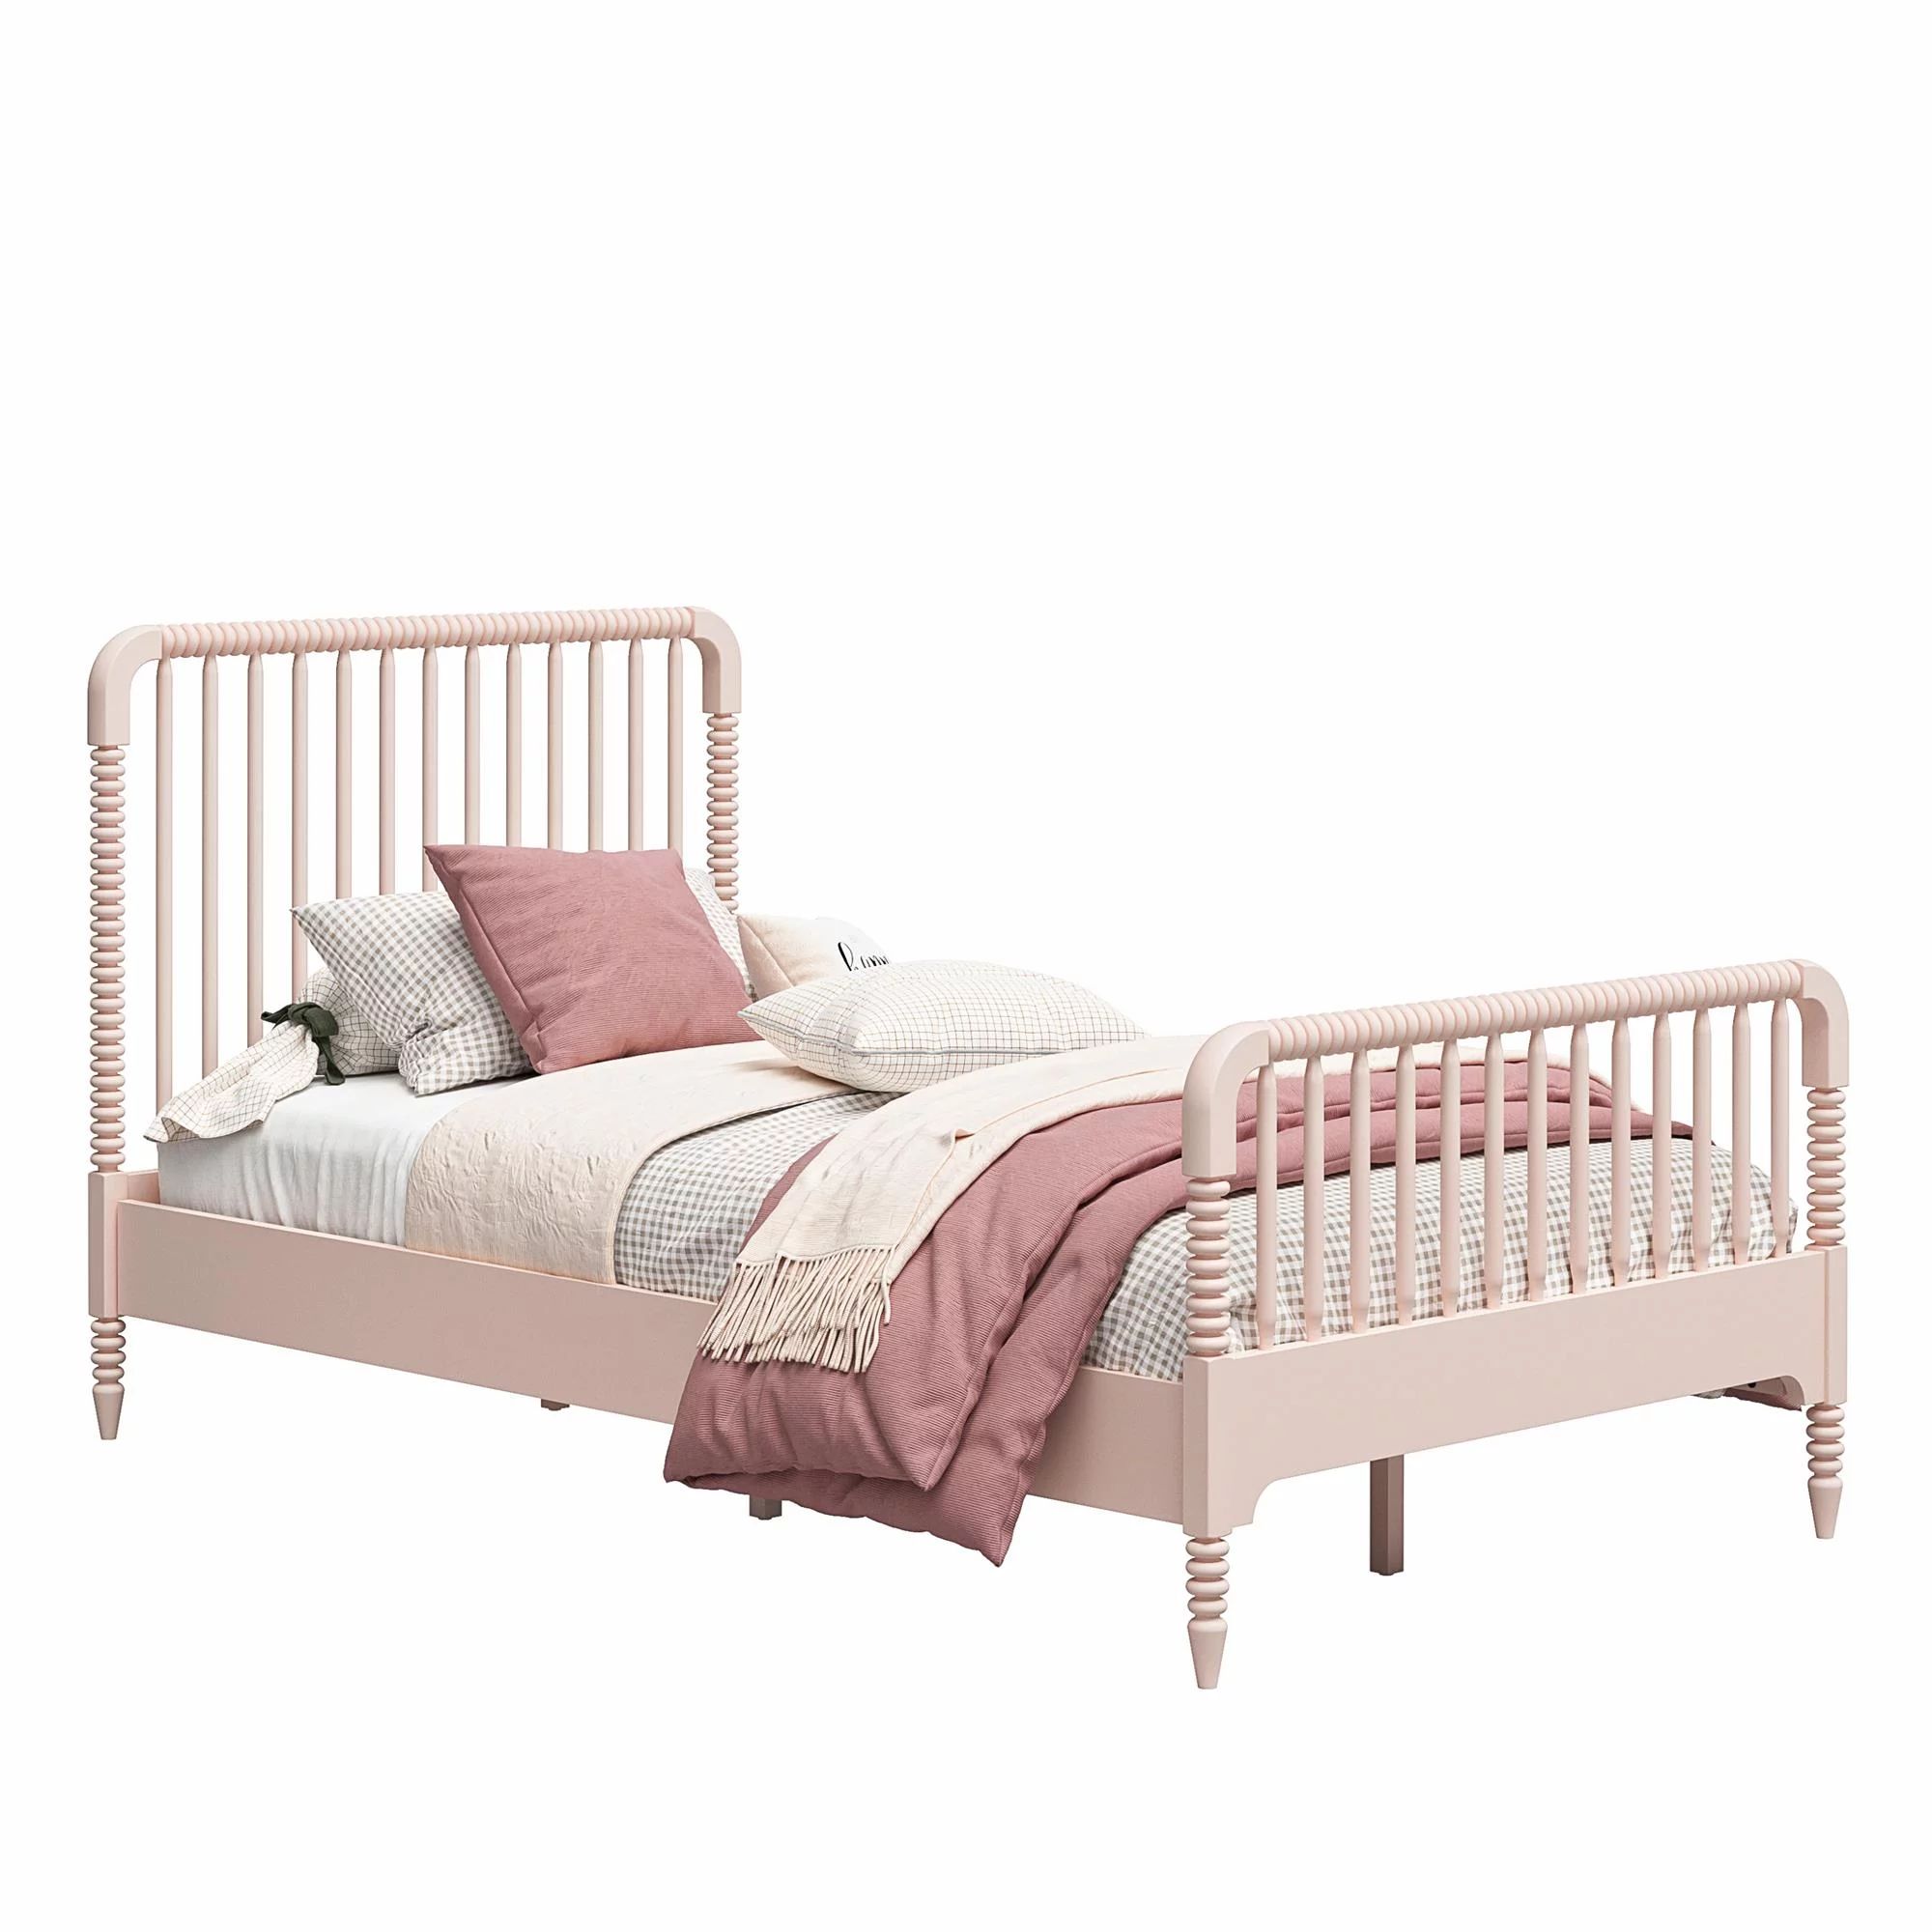 Little Seeds Rowan Valley Linden Kidsâ Twin Size Bed, Pale Pink | Walmart (US)